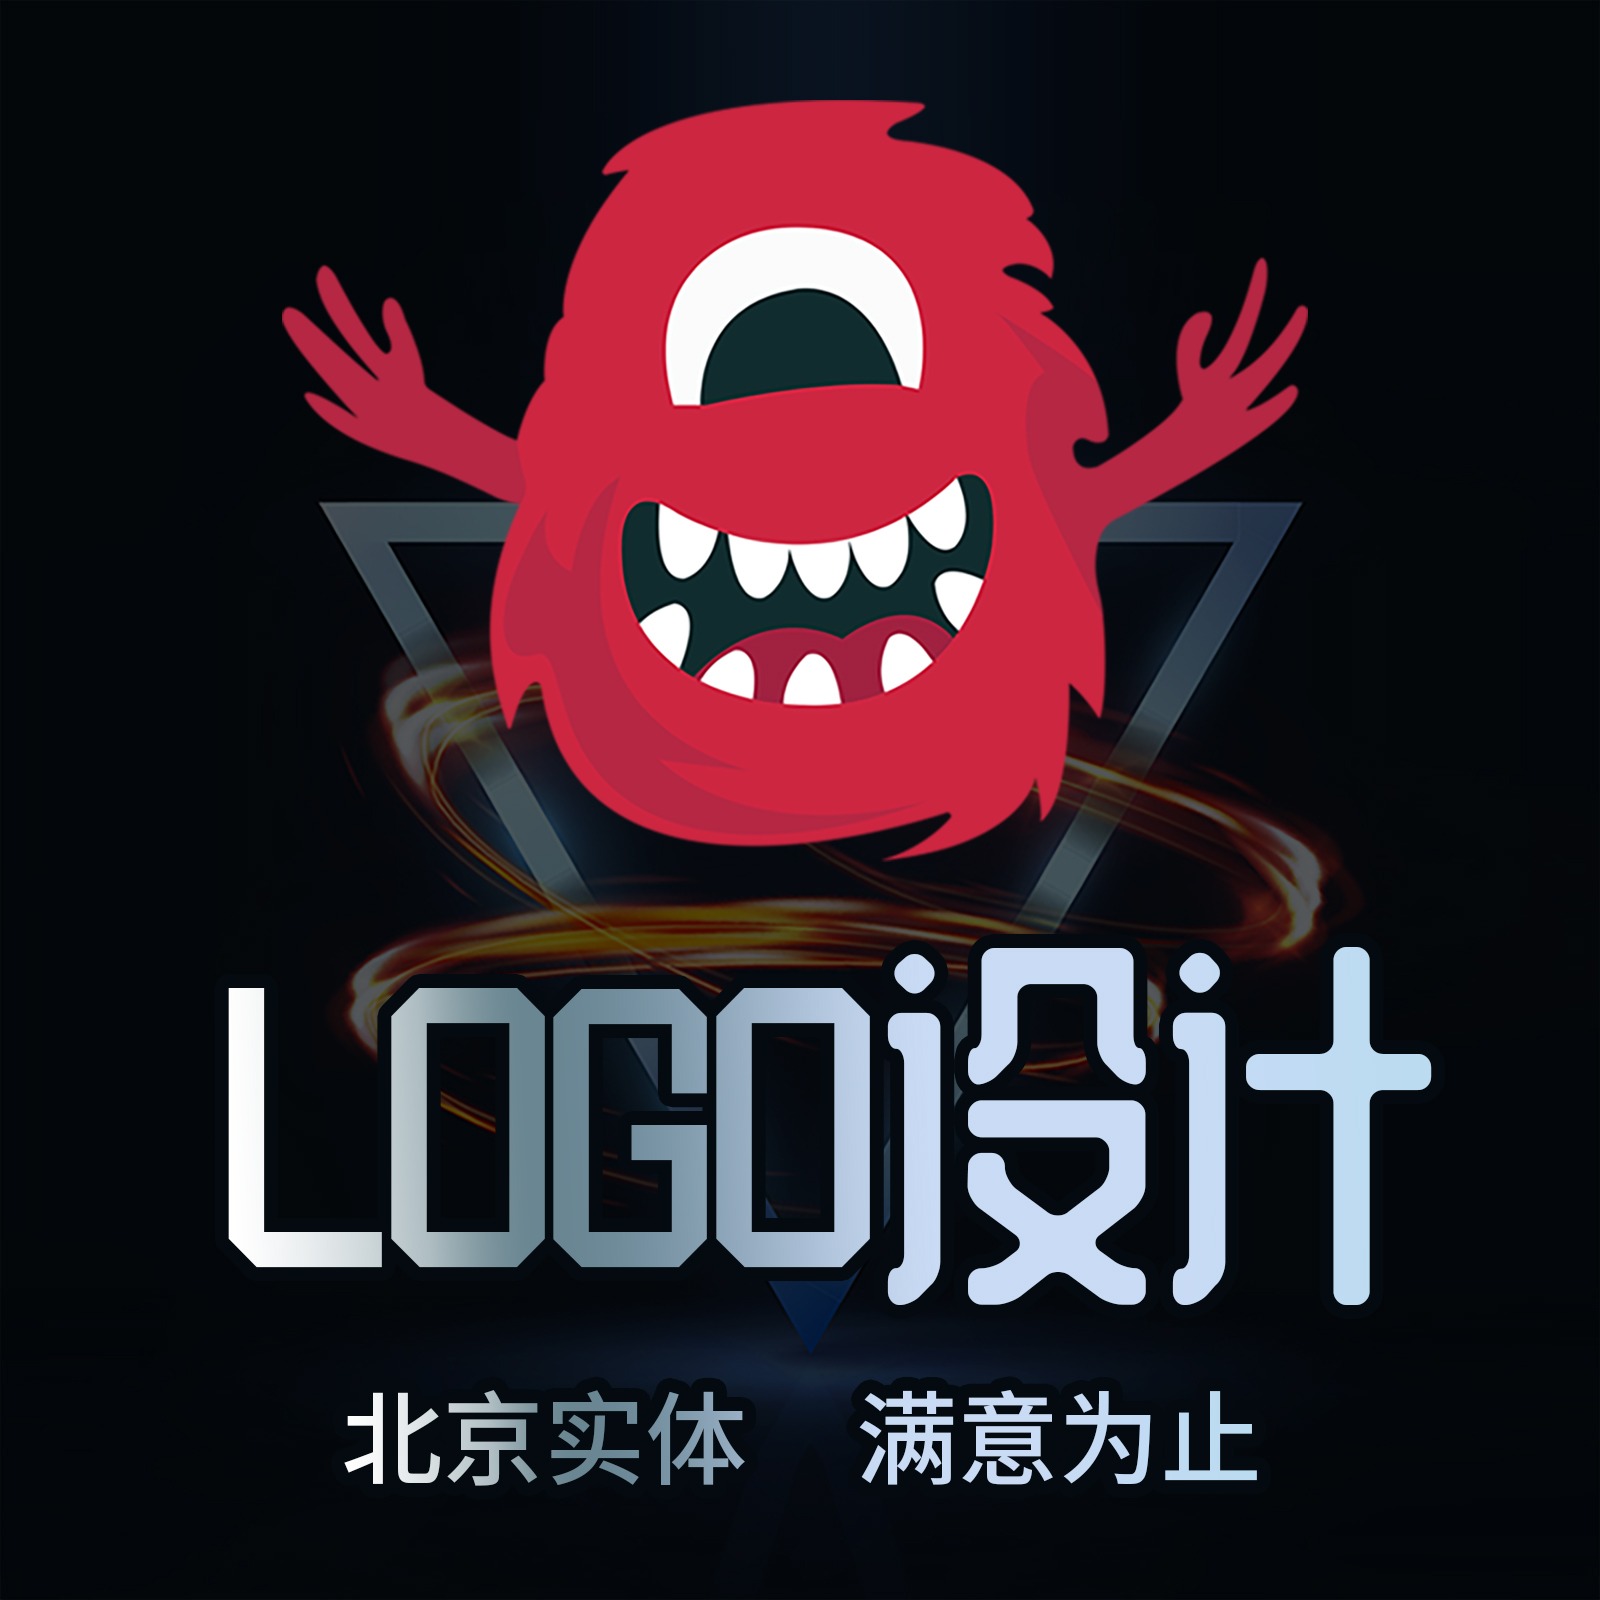 字体设计商标设计中国风logo设计商标标志企业品牌LOGO